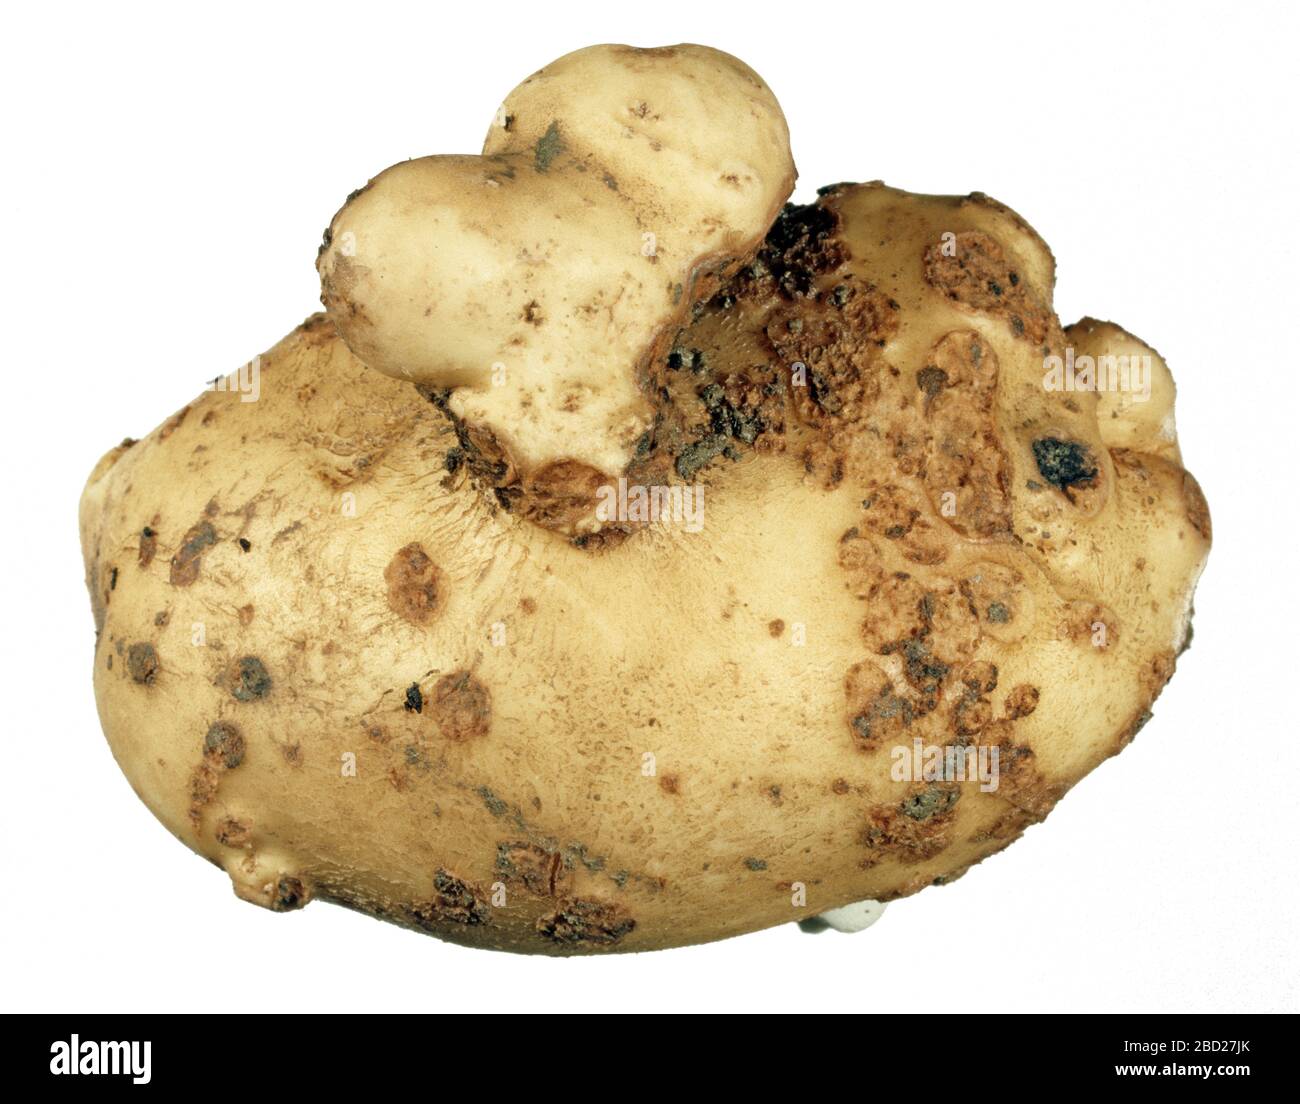 Eine Zerkozoenkrankheit pulveriger Schabe (Spongospora subterranea) an einer kantigen und warzigen Kartoffelknolle Stockfoto